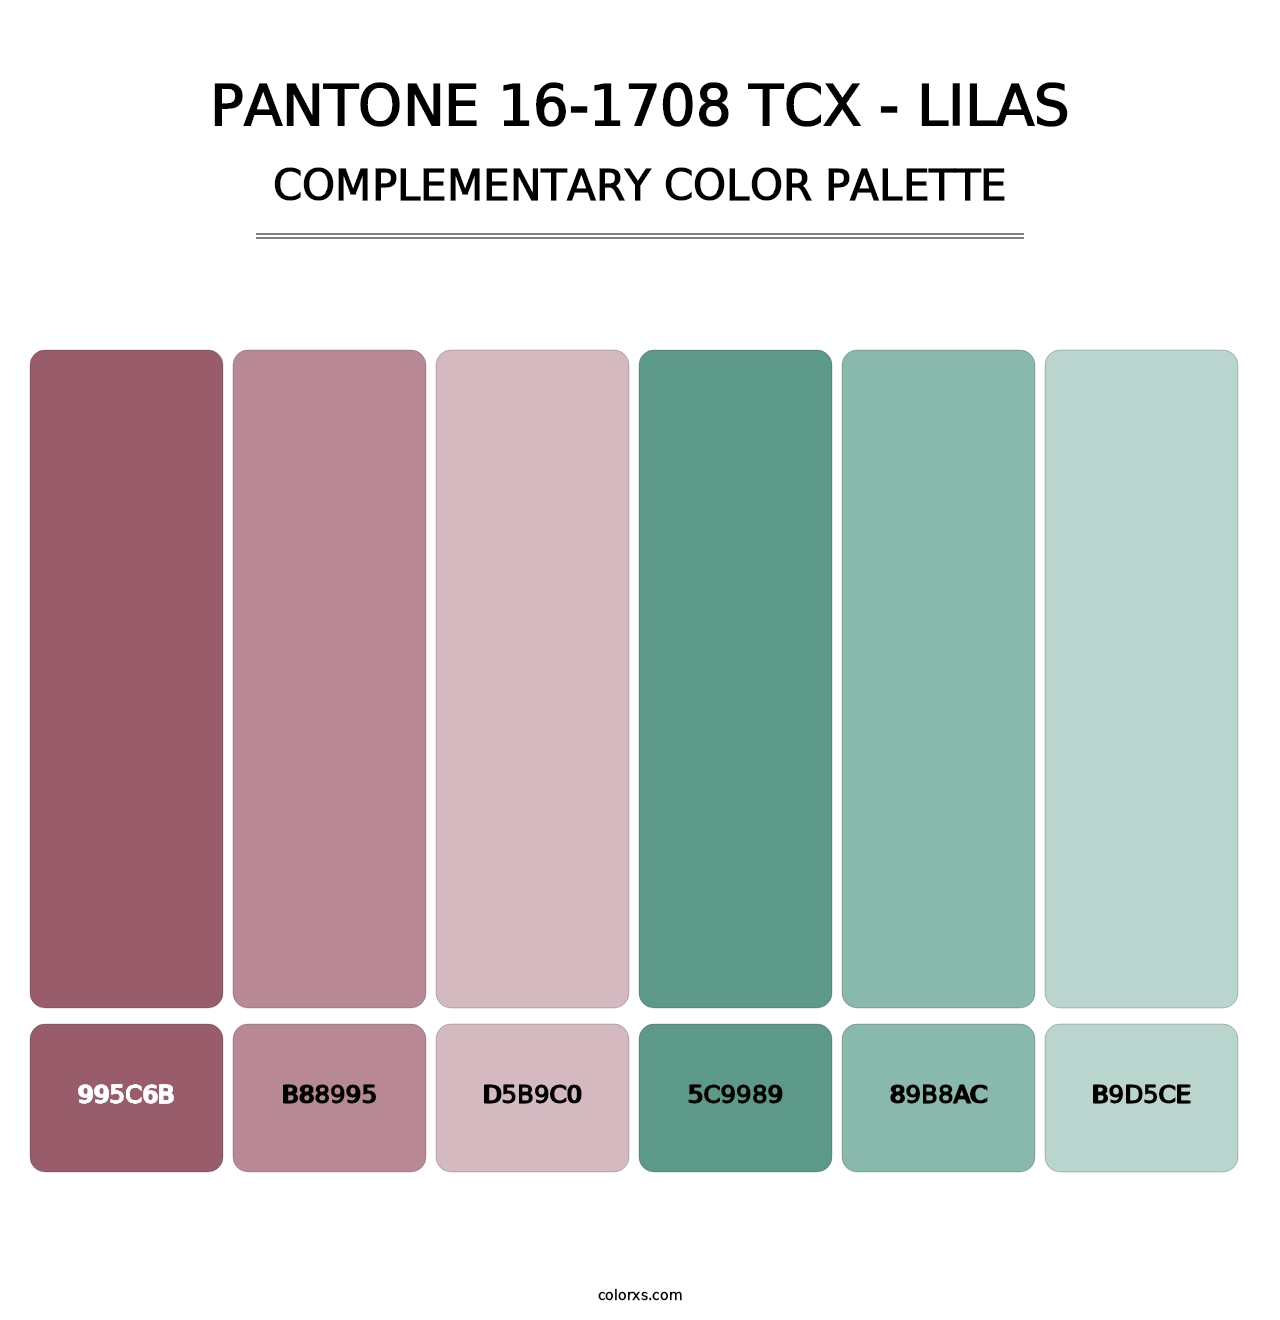 PANTONE 16-1708 TCX - Lilas - Complementary Color Palette